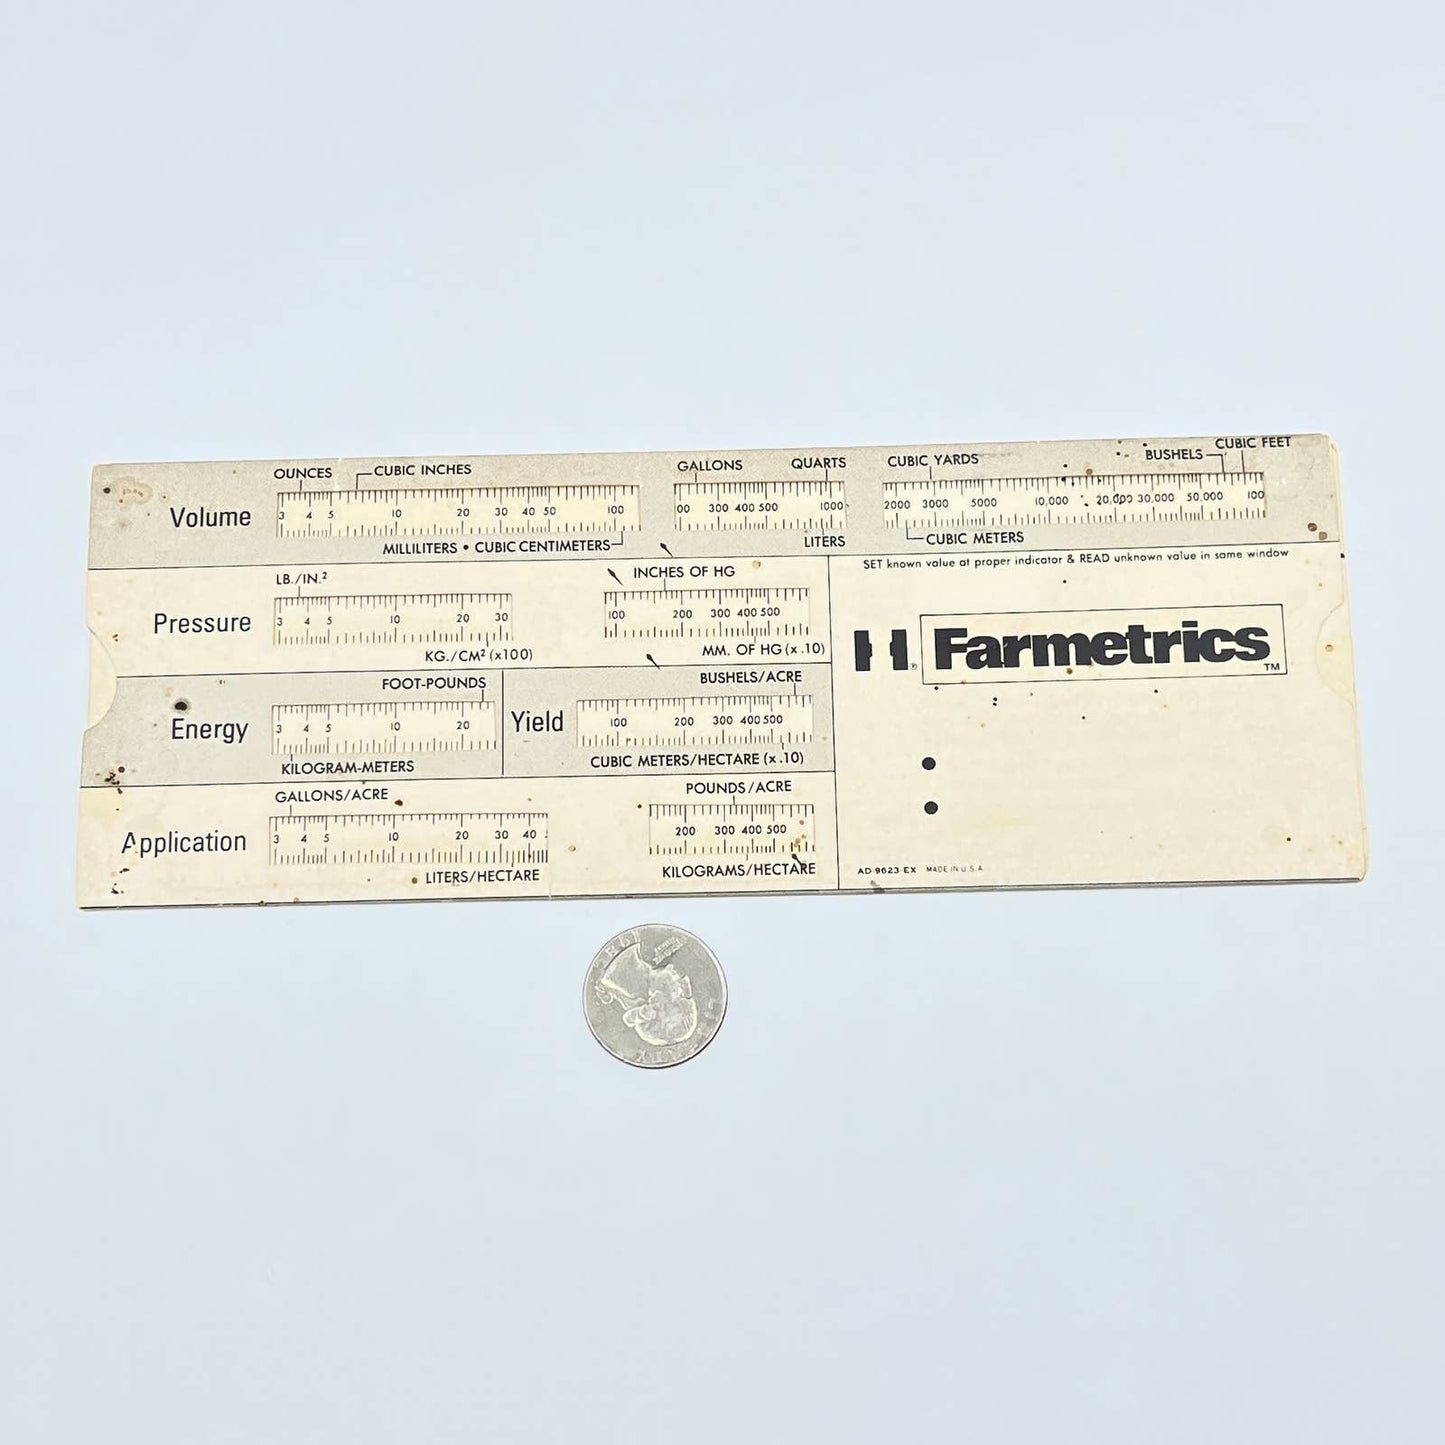 1976 Paper Slide Rule "Farmetrics" International Harvester Nelson Taxel AC1